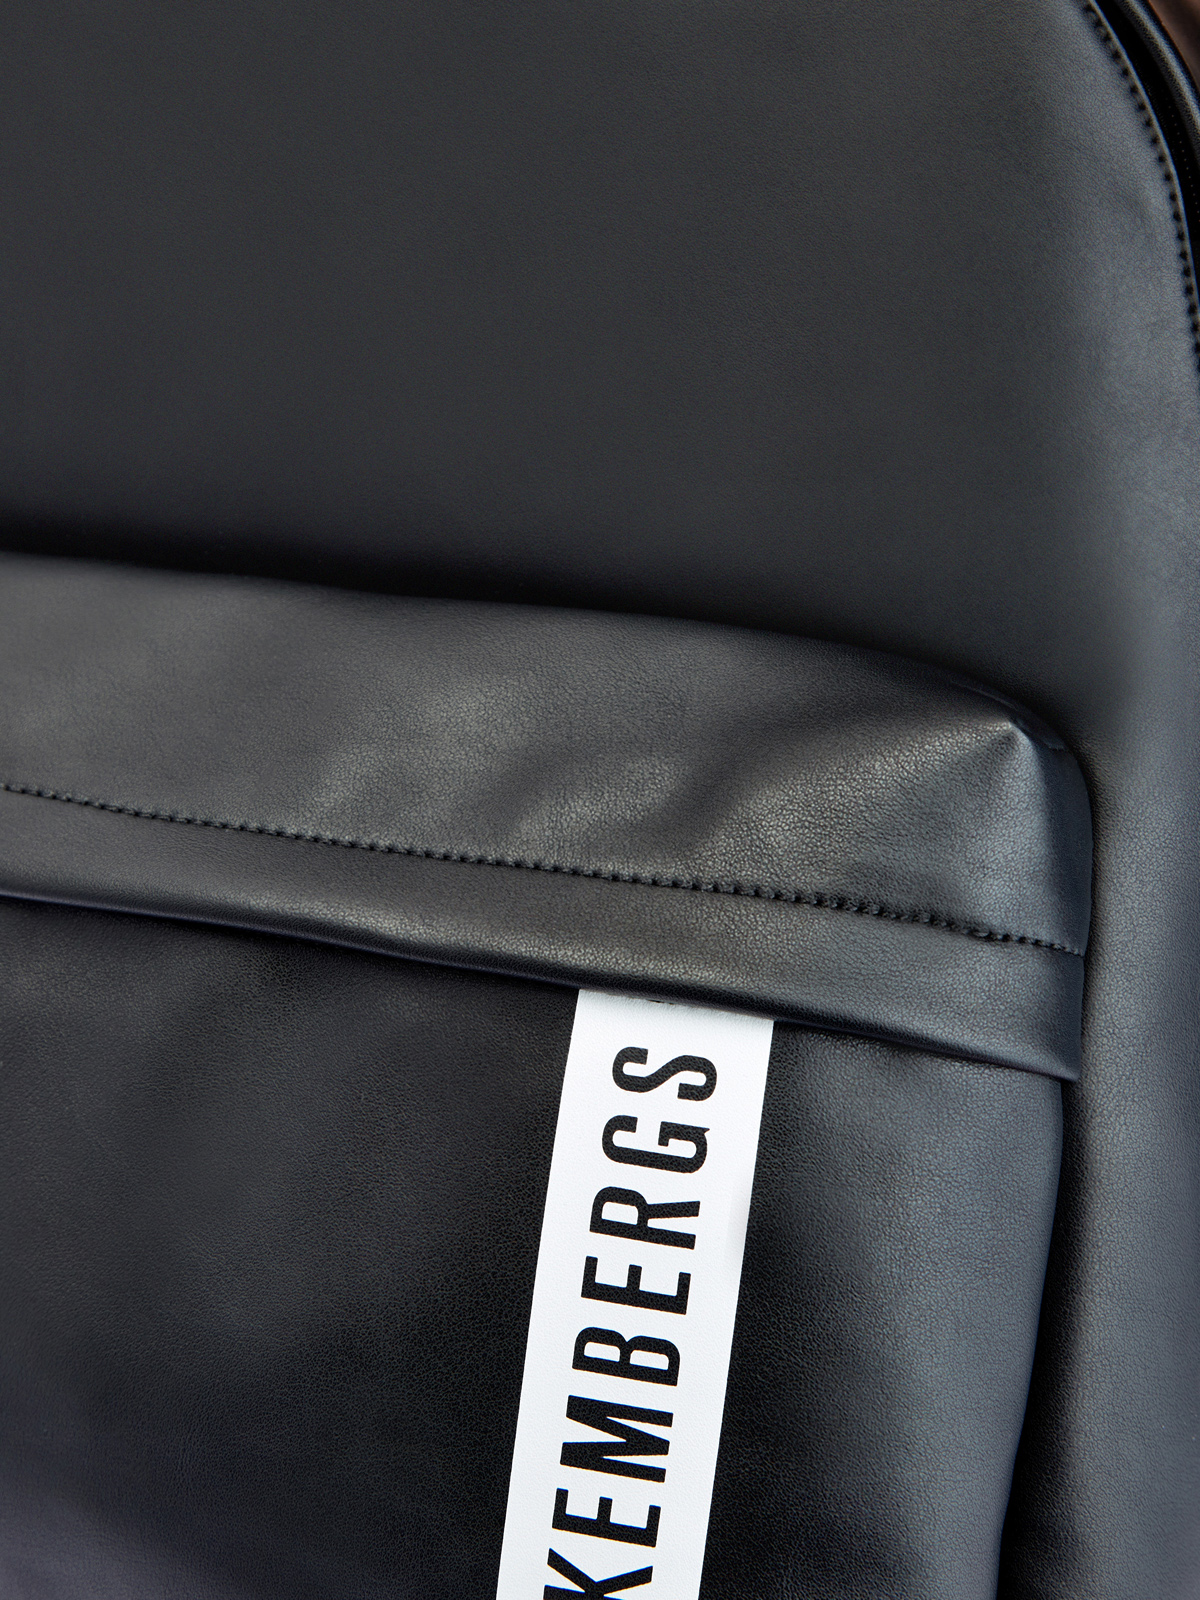 Монохромный рюкзак White Label из матовой эко-кожи BIKKEMBERGS, цвет черный, размер 5;6;7;8;9 - фото 6